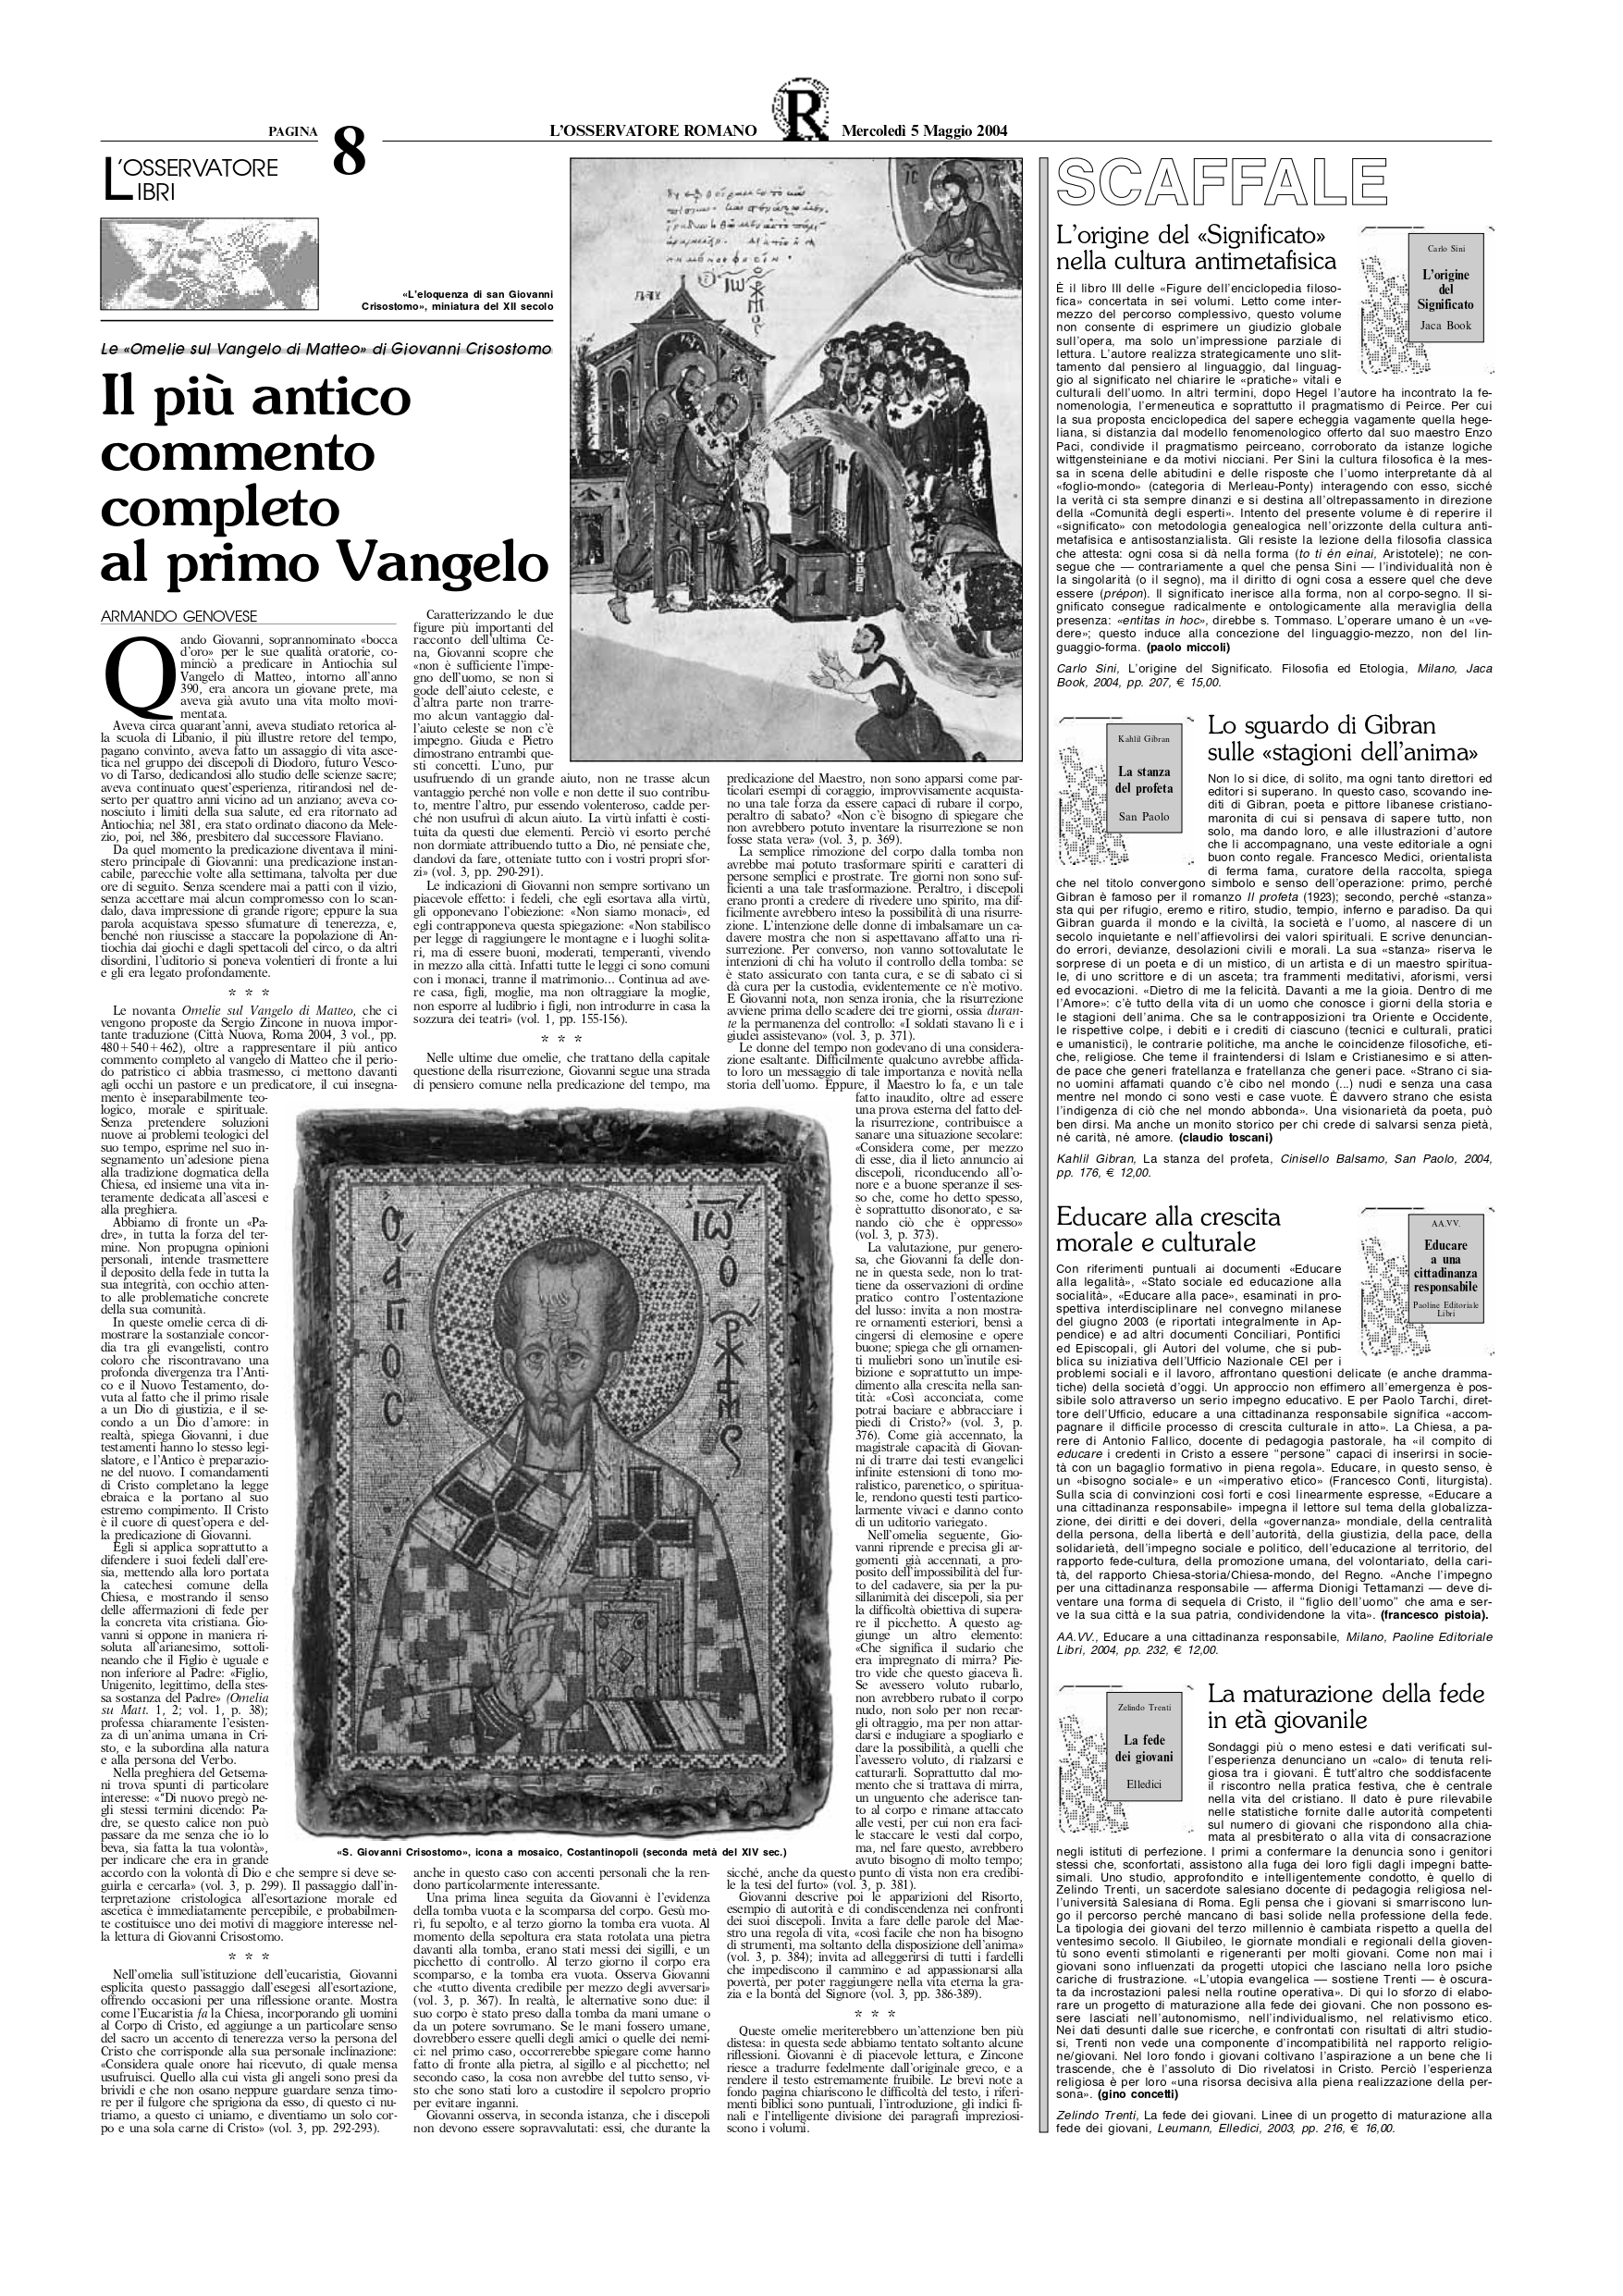 Claudio Toscani, Lo sguardo di Gibran sulle «stagioni dell'anima», "L'Osservatore Romano", May 5, 2004, p. 8 (review)